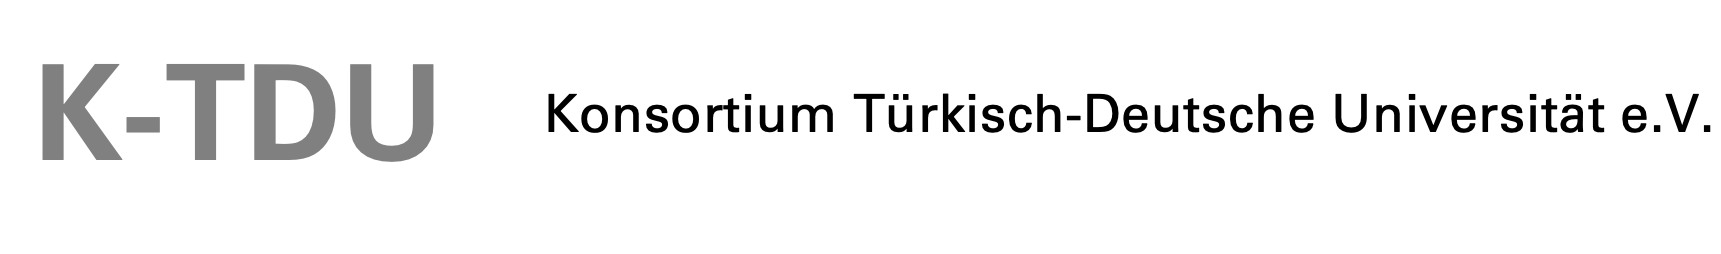 K_TDU - logo